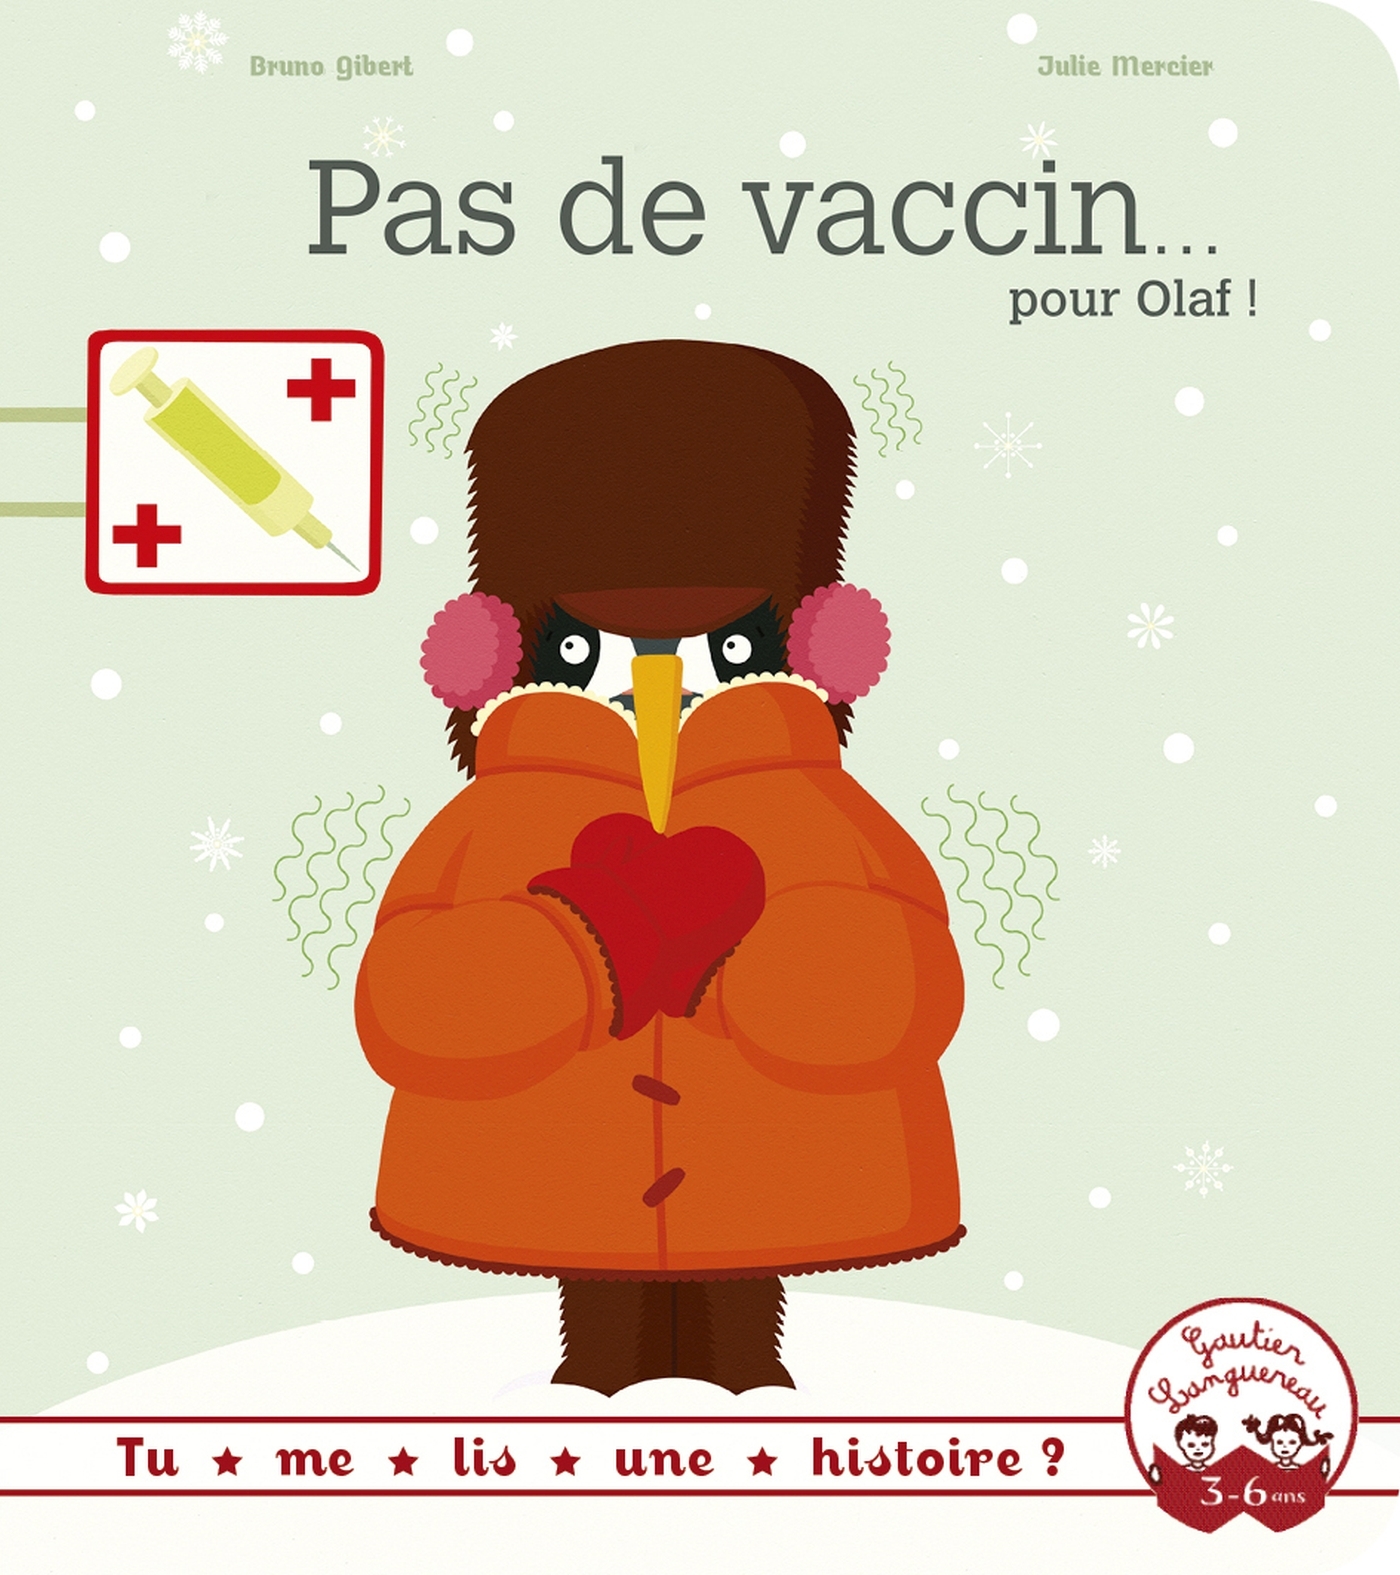 Pas de vaccin pour Olaf